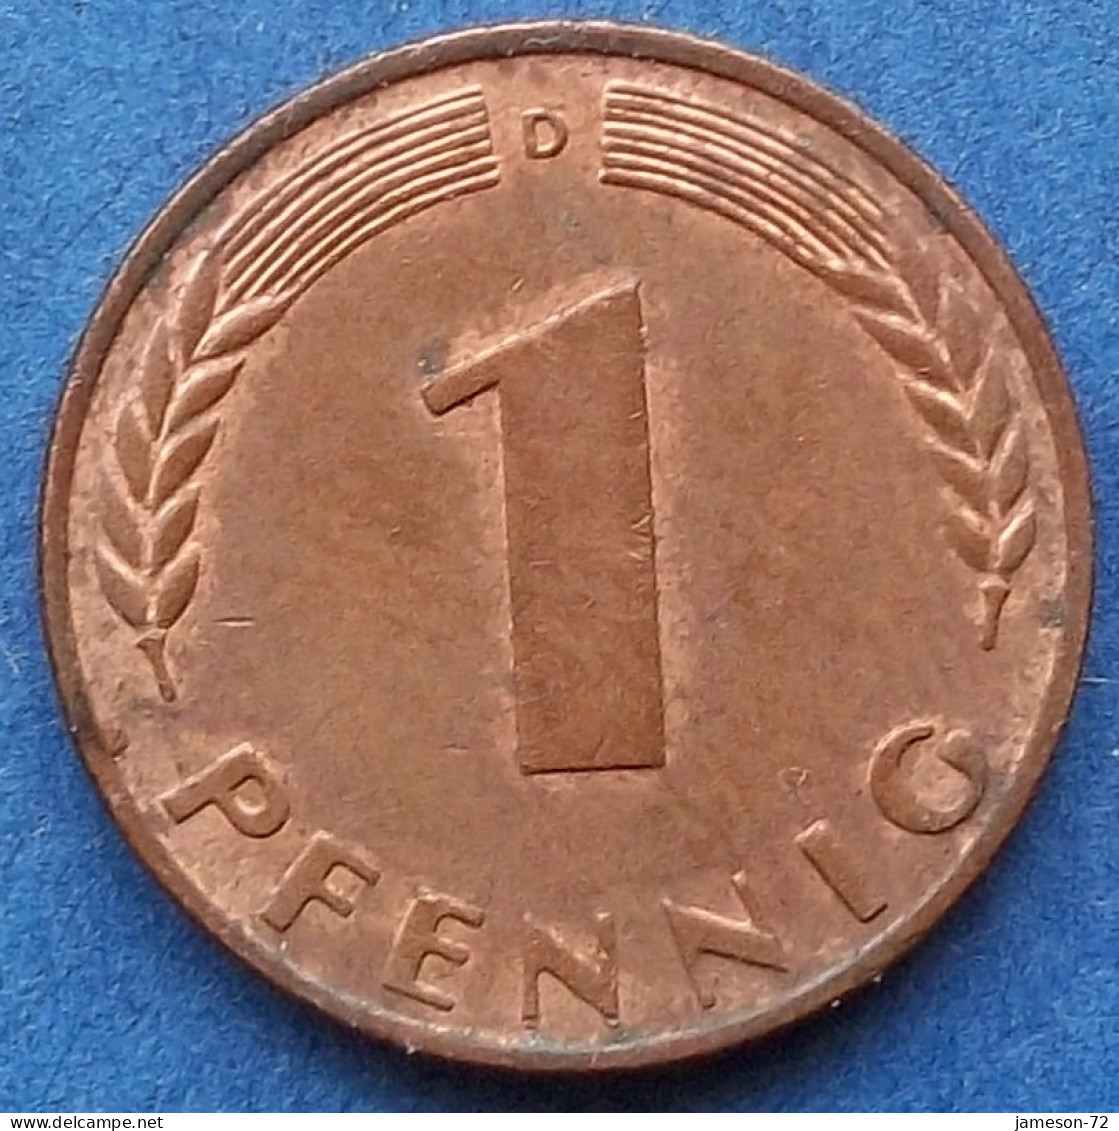 GERMANY - 1 Pfennig 1950 D KM# 105 Federal Republic Mark Coinage (1946-2002) - Edelweiss Coins - 1 Pfennig